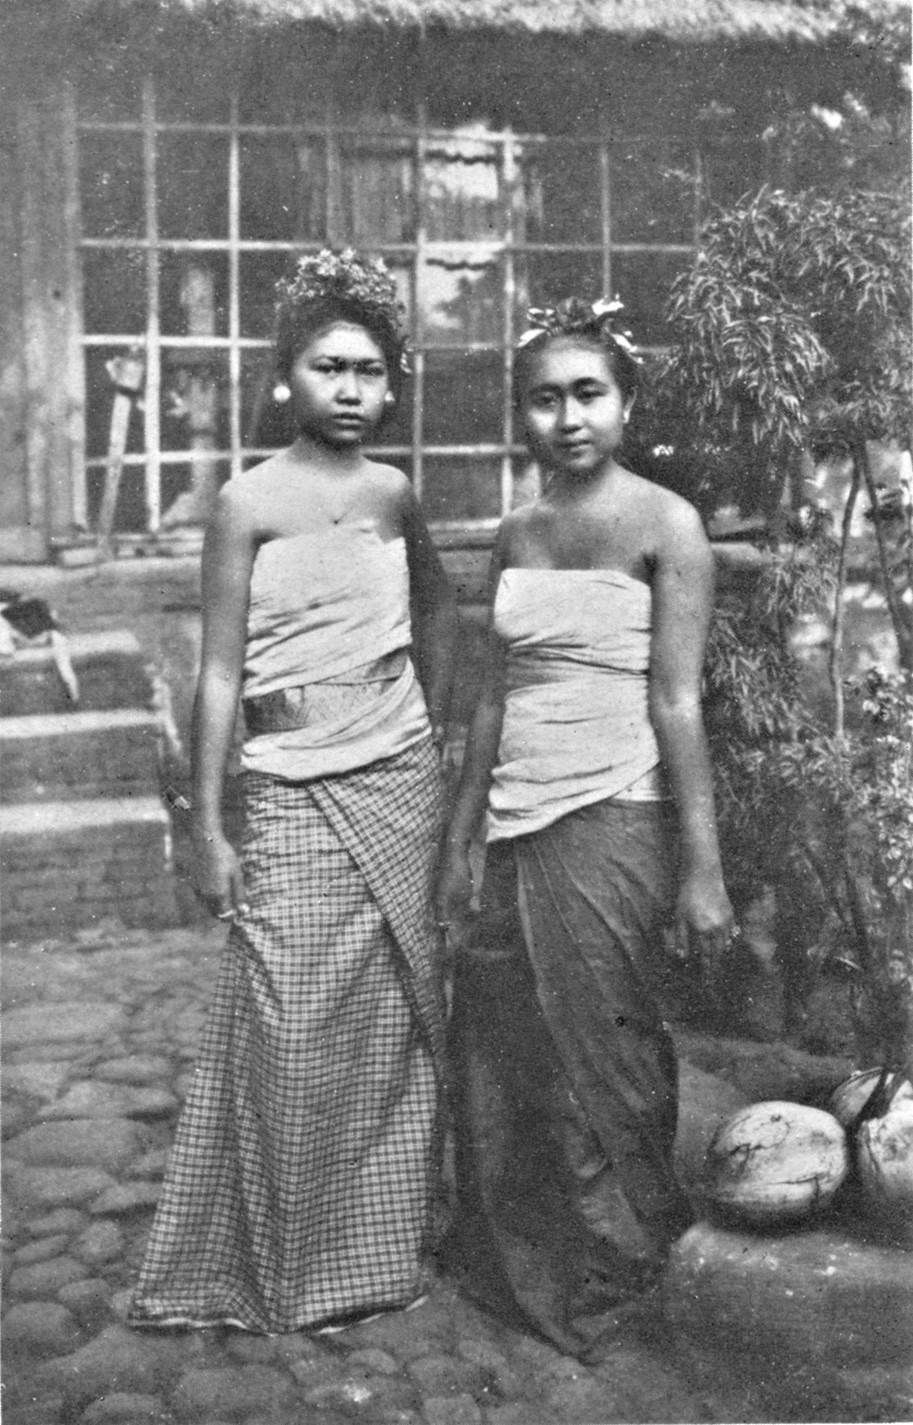 Balinese girls